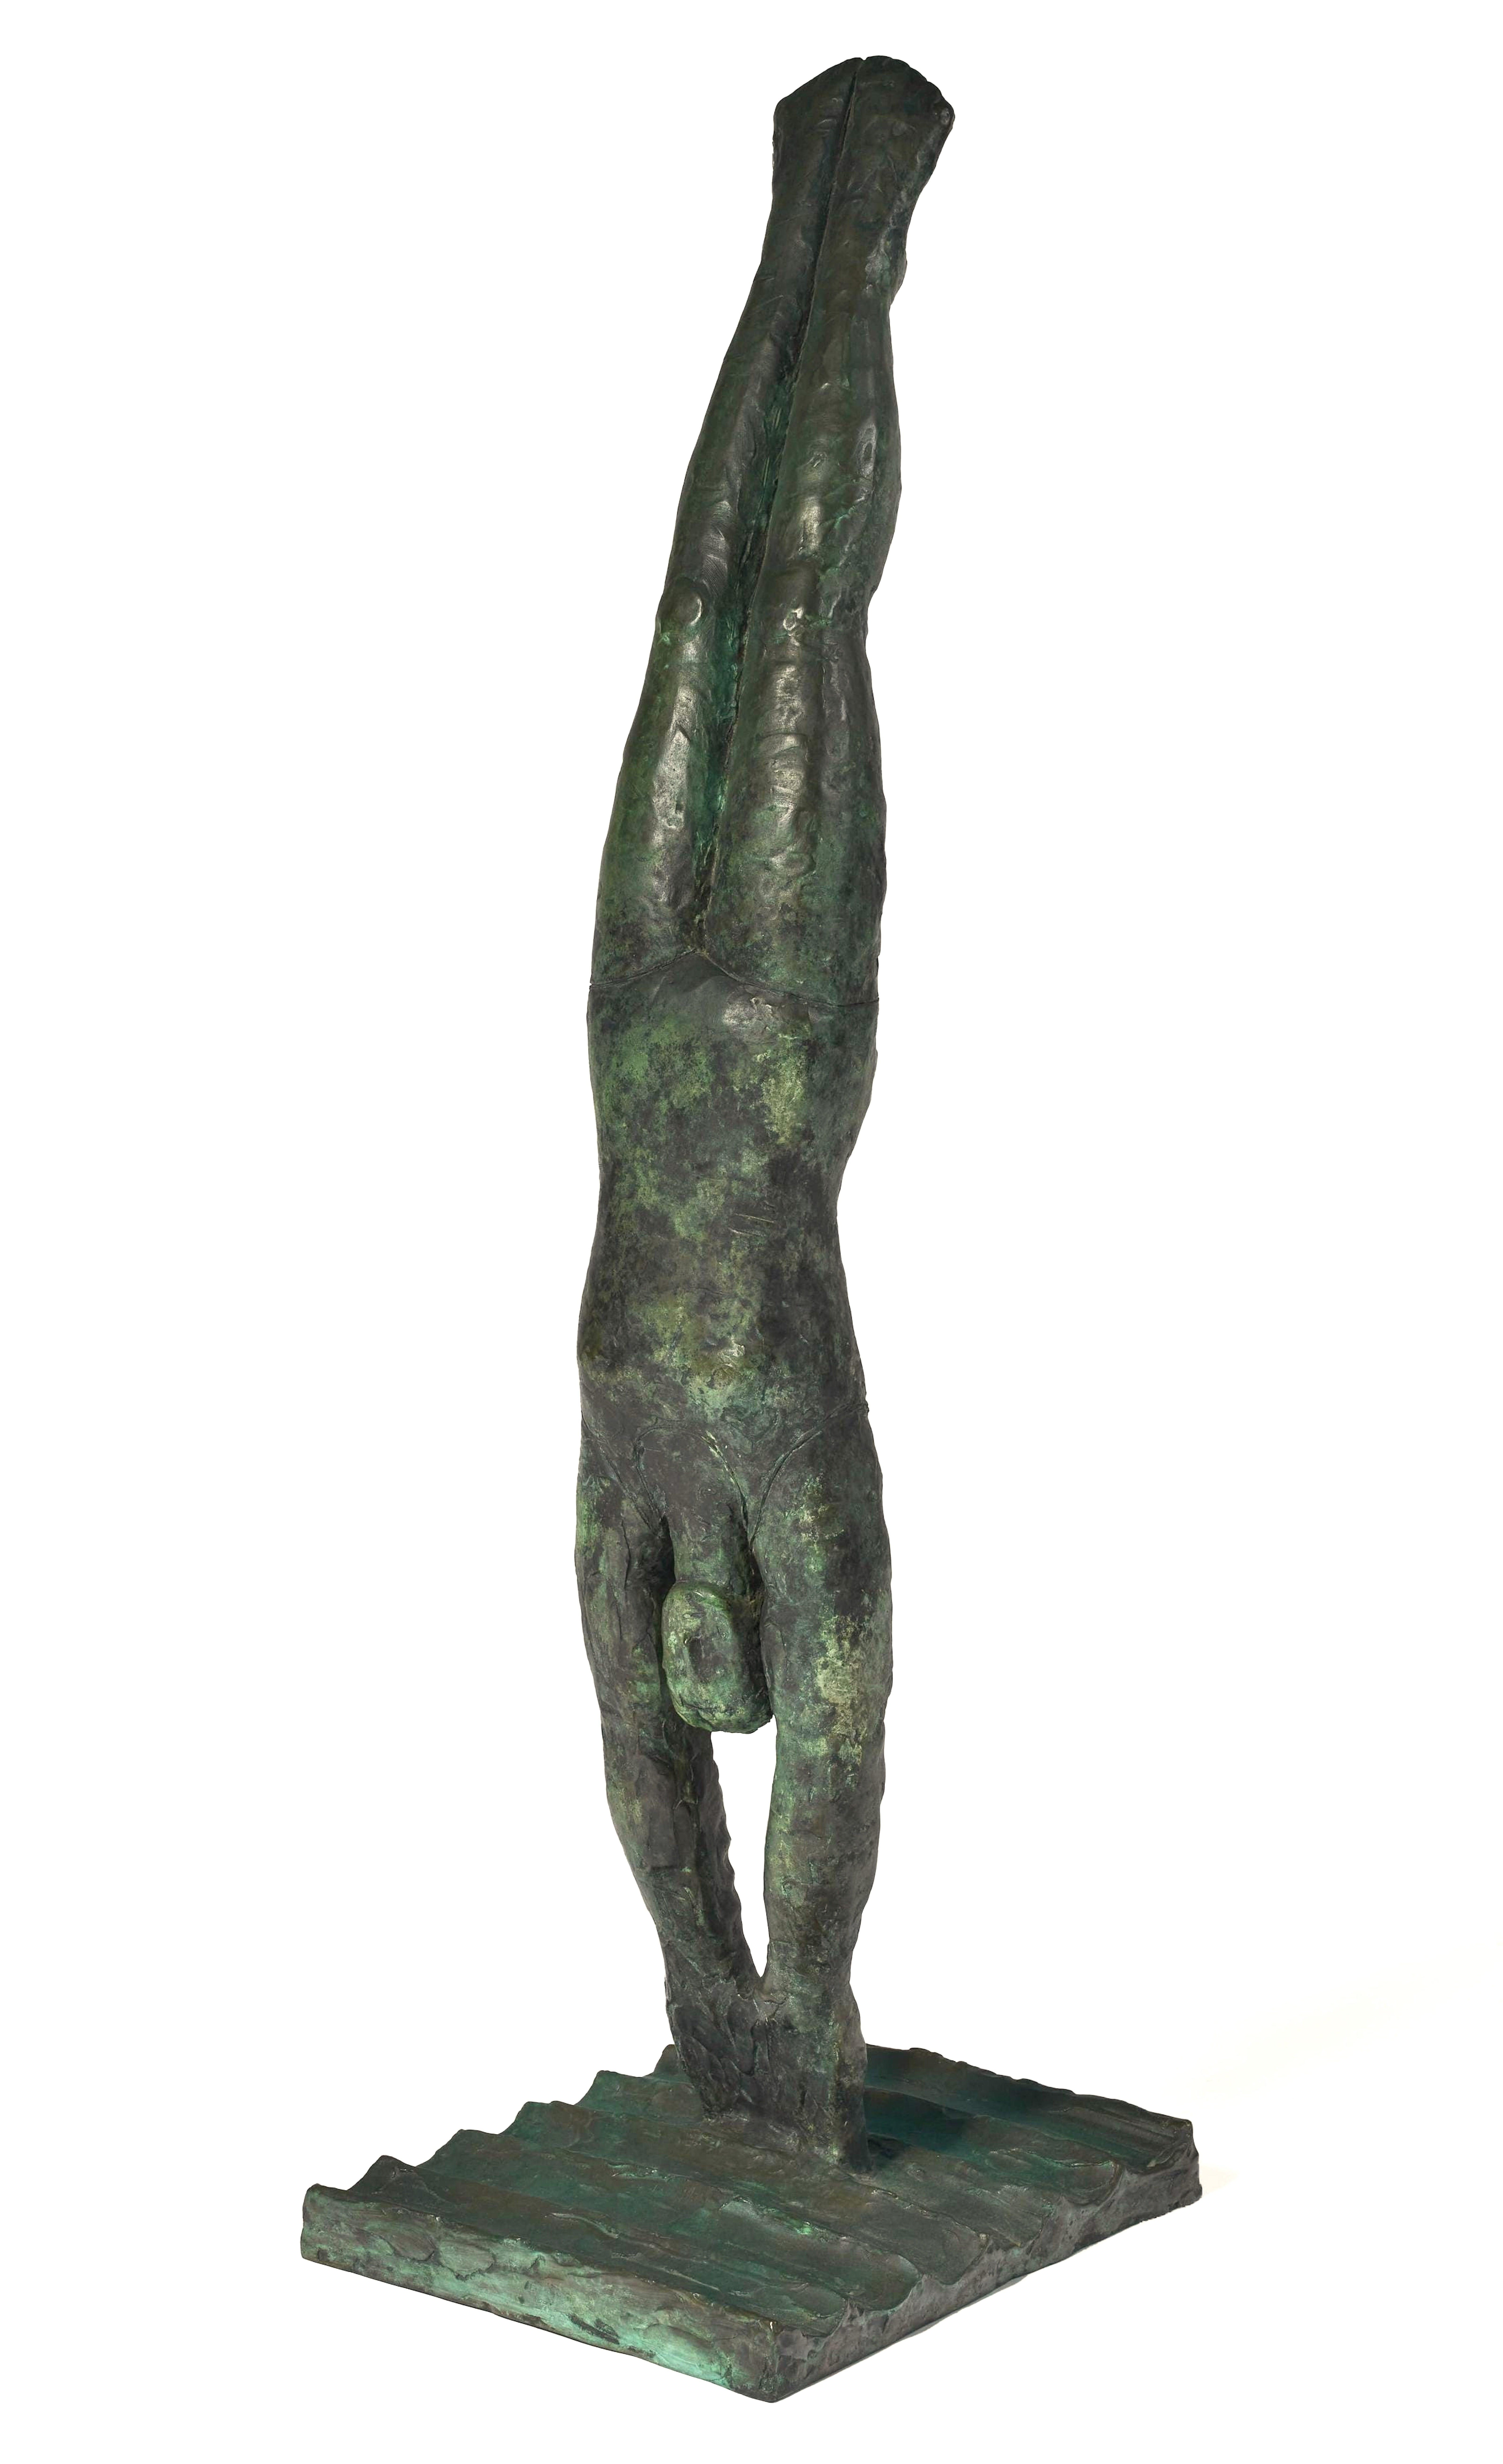 Martin Silverman Figurative Sculpture - The Diver